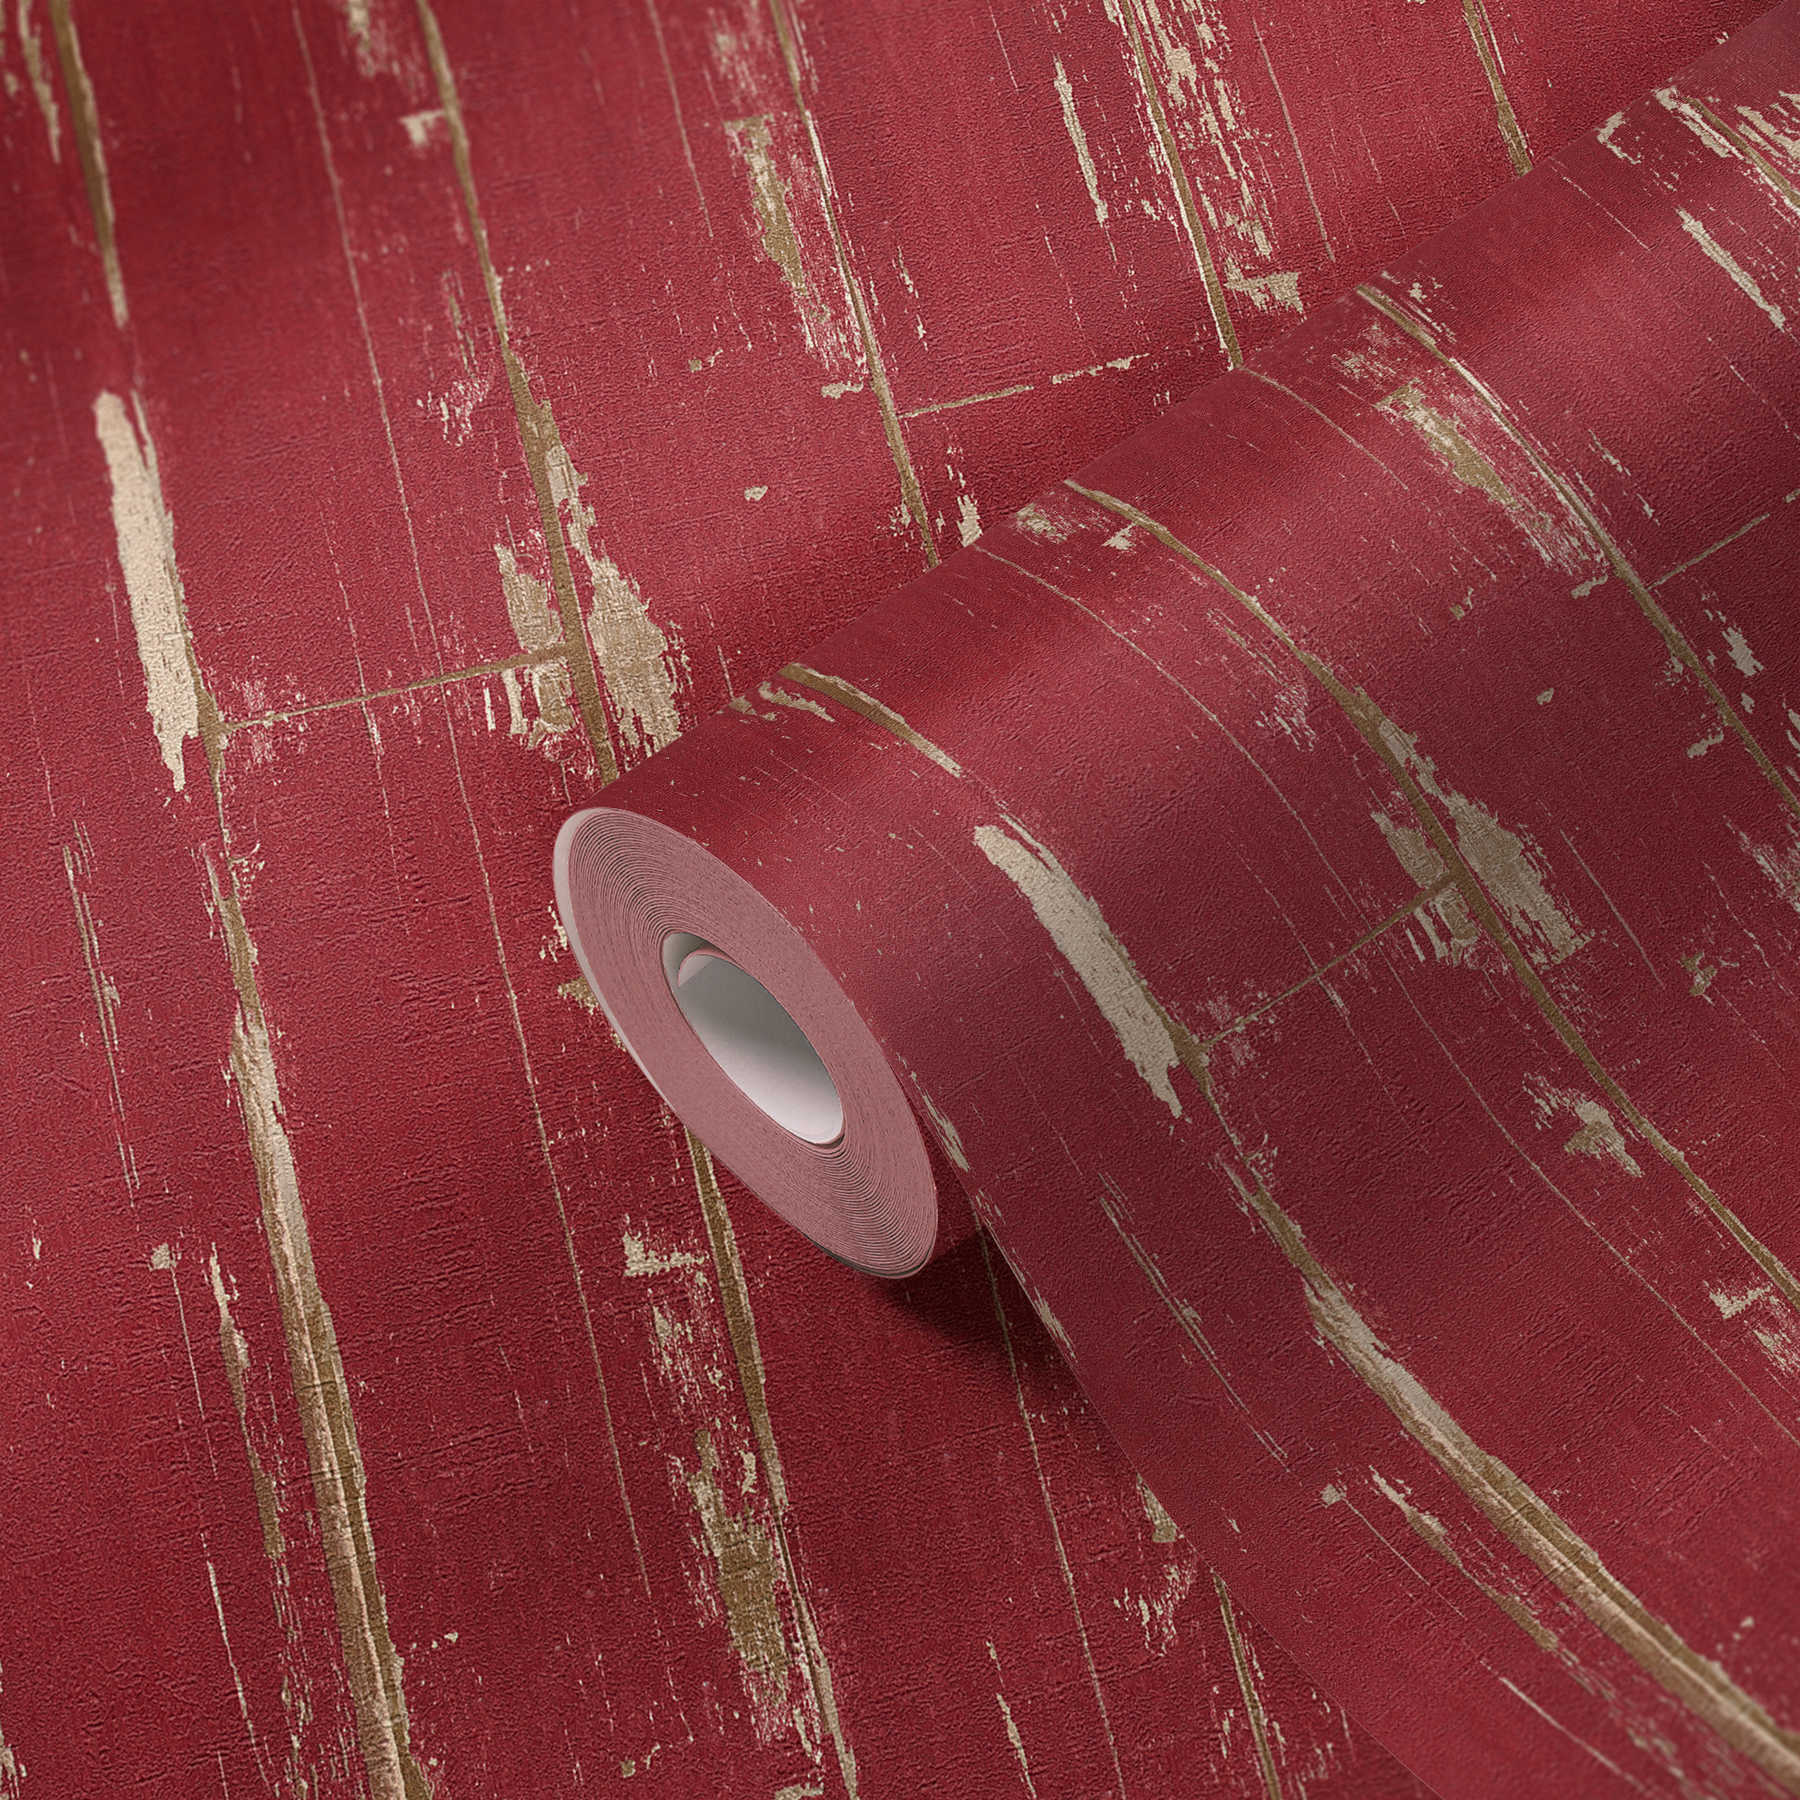             Holztapete mit Brettern, Vintage Look & Used-Optik – Rot
        